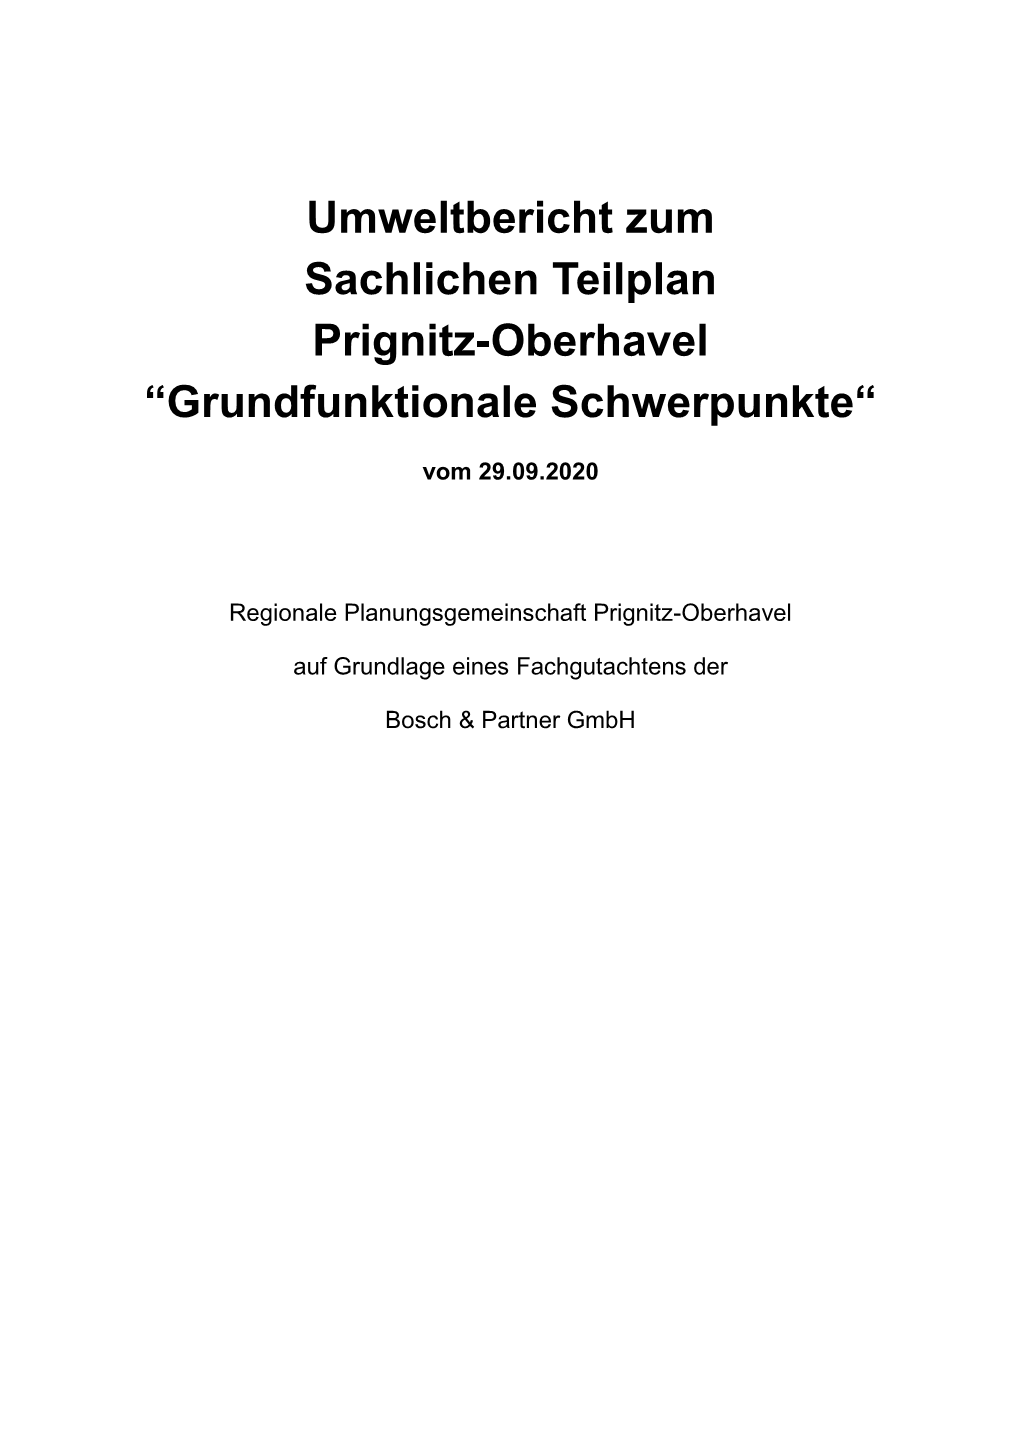 Umweltbericht Zum Sachlichen Teilplan Prignitz-Oberhavel “Grundfunktionale Schwerpunkte“